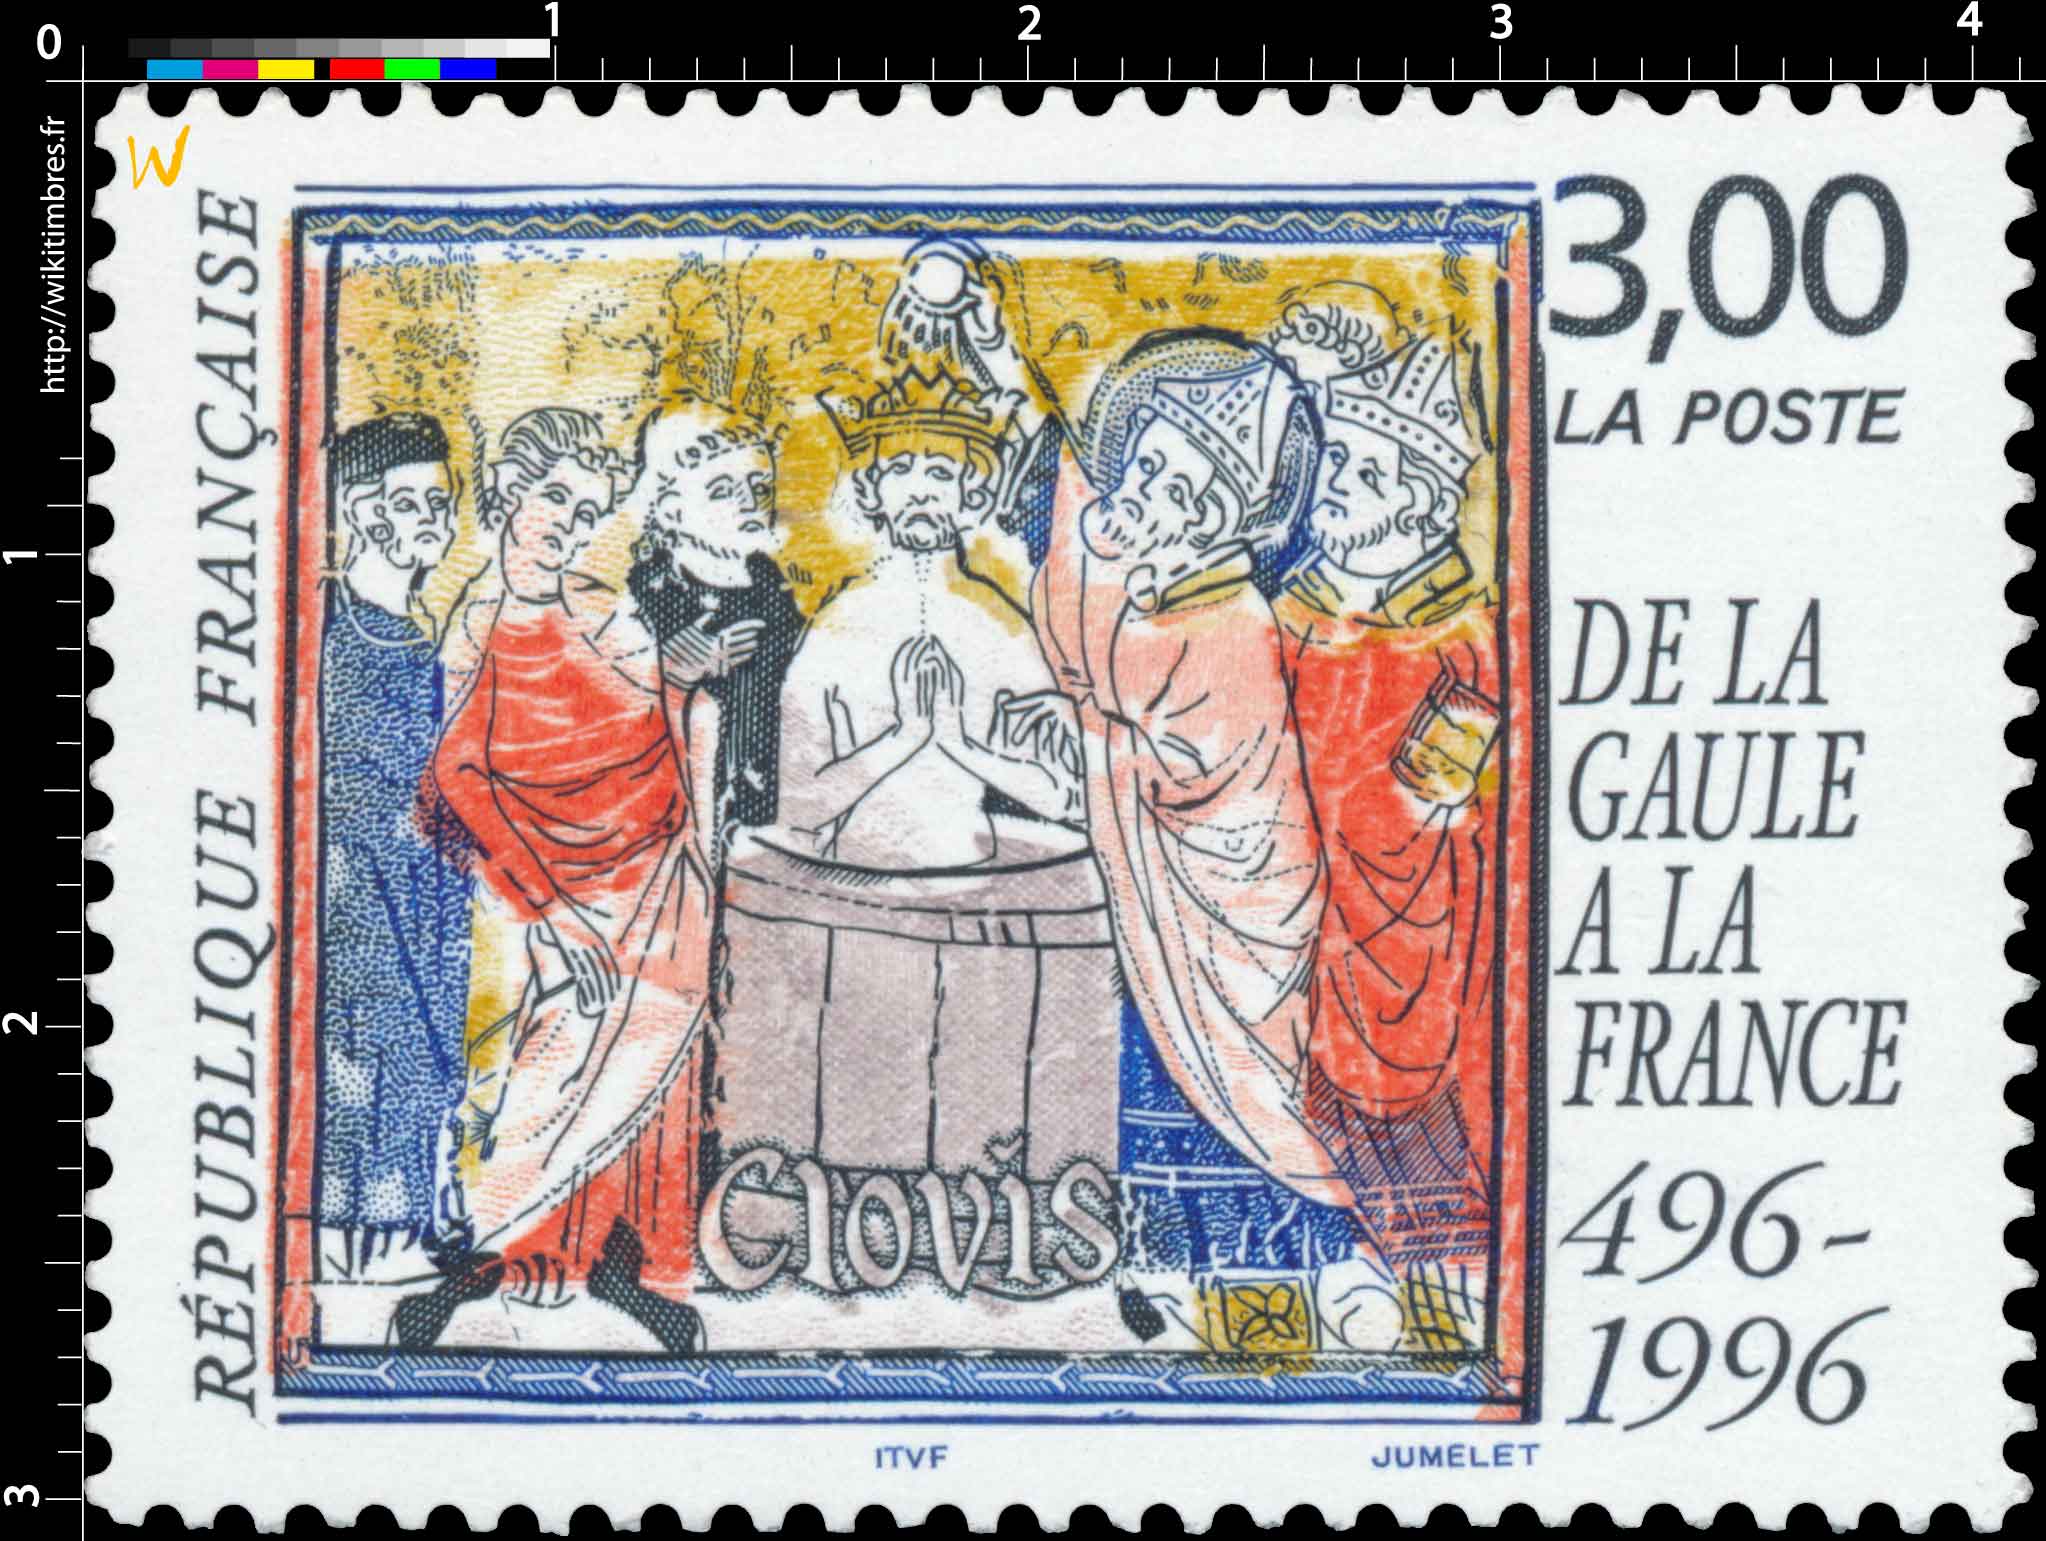 DE LA GAULE À LA FRANCE 496-1996